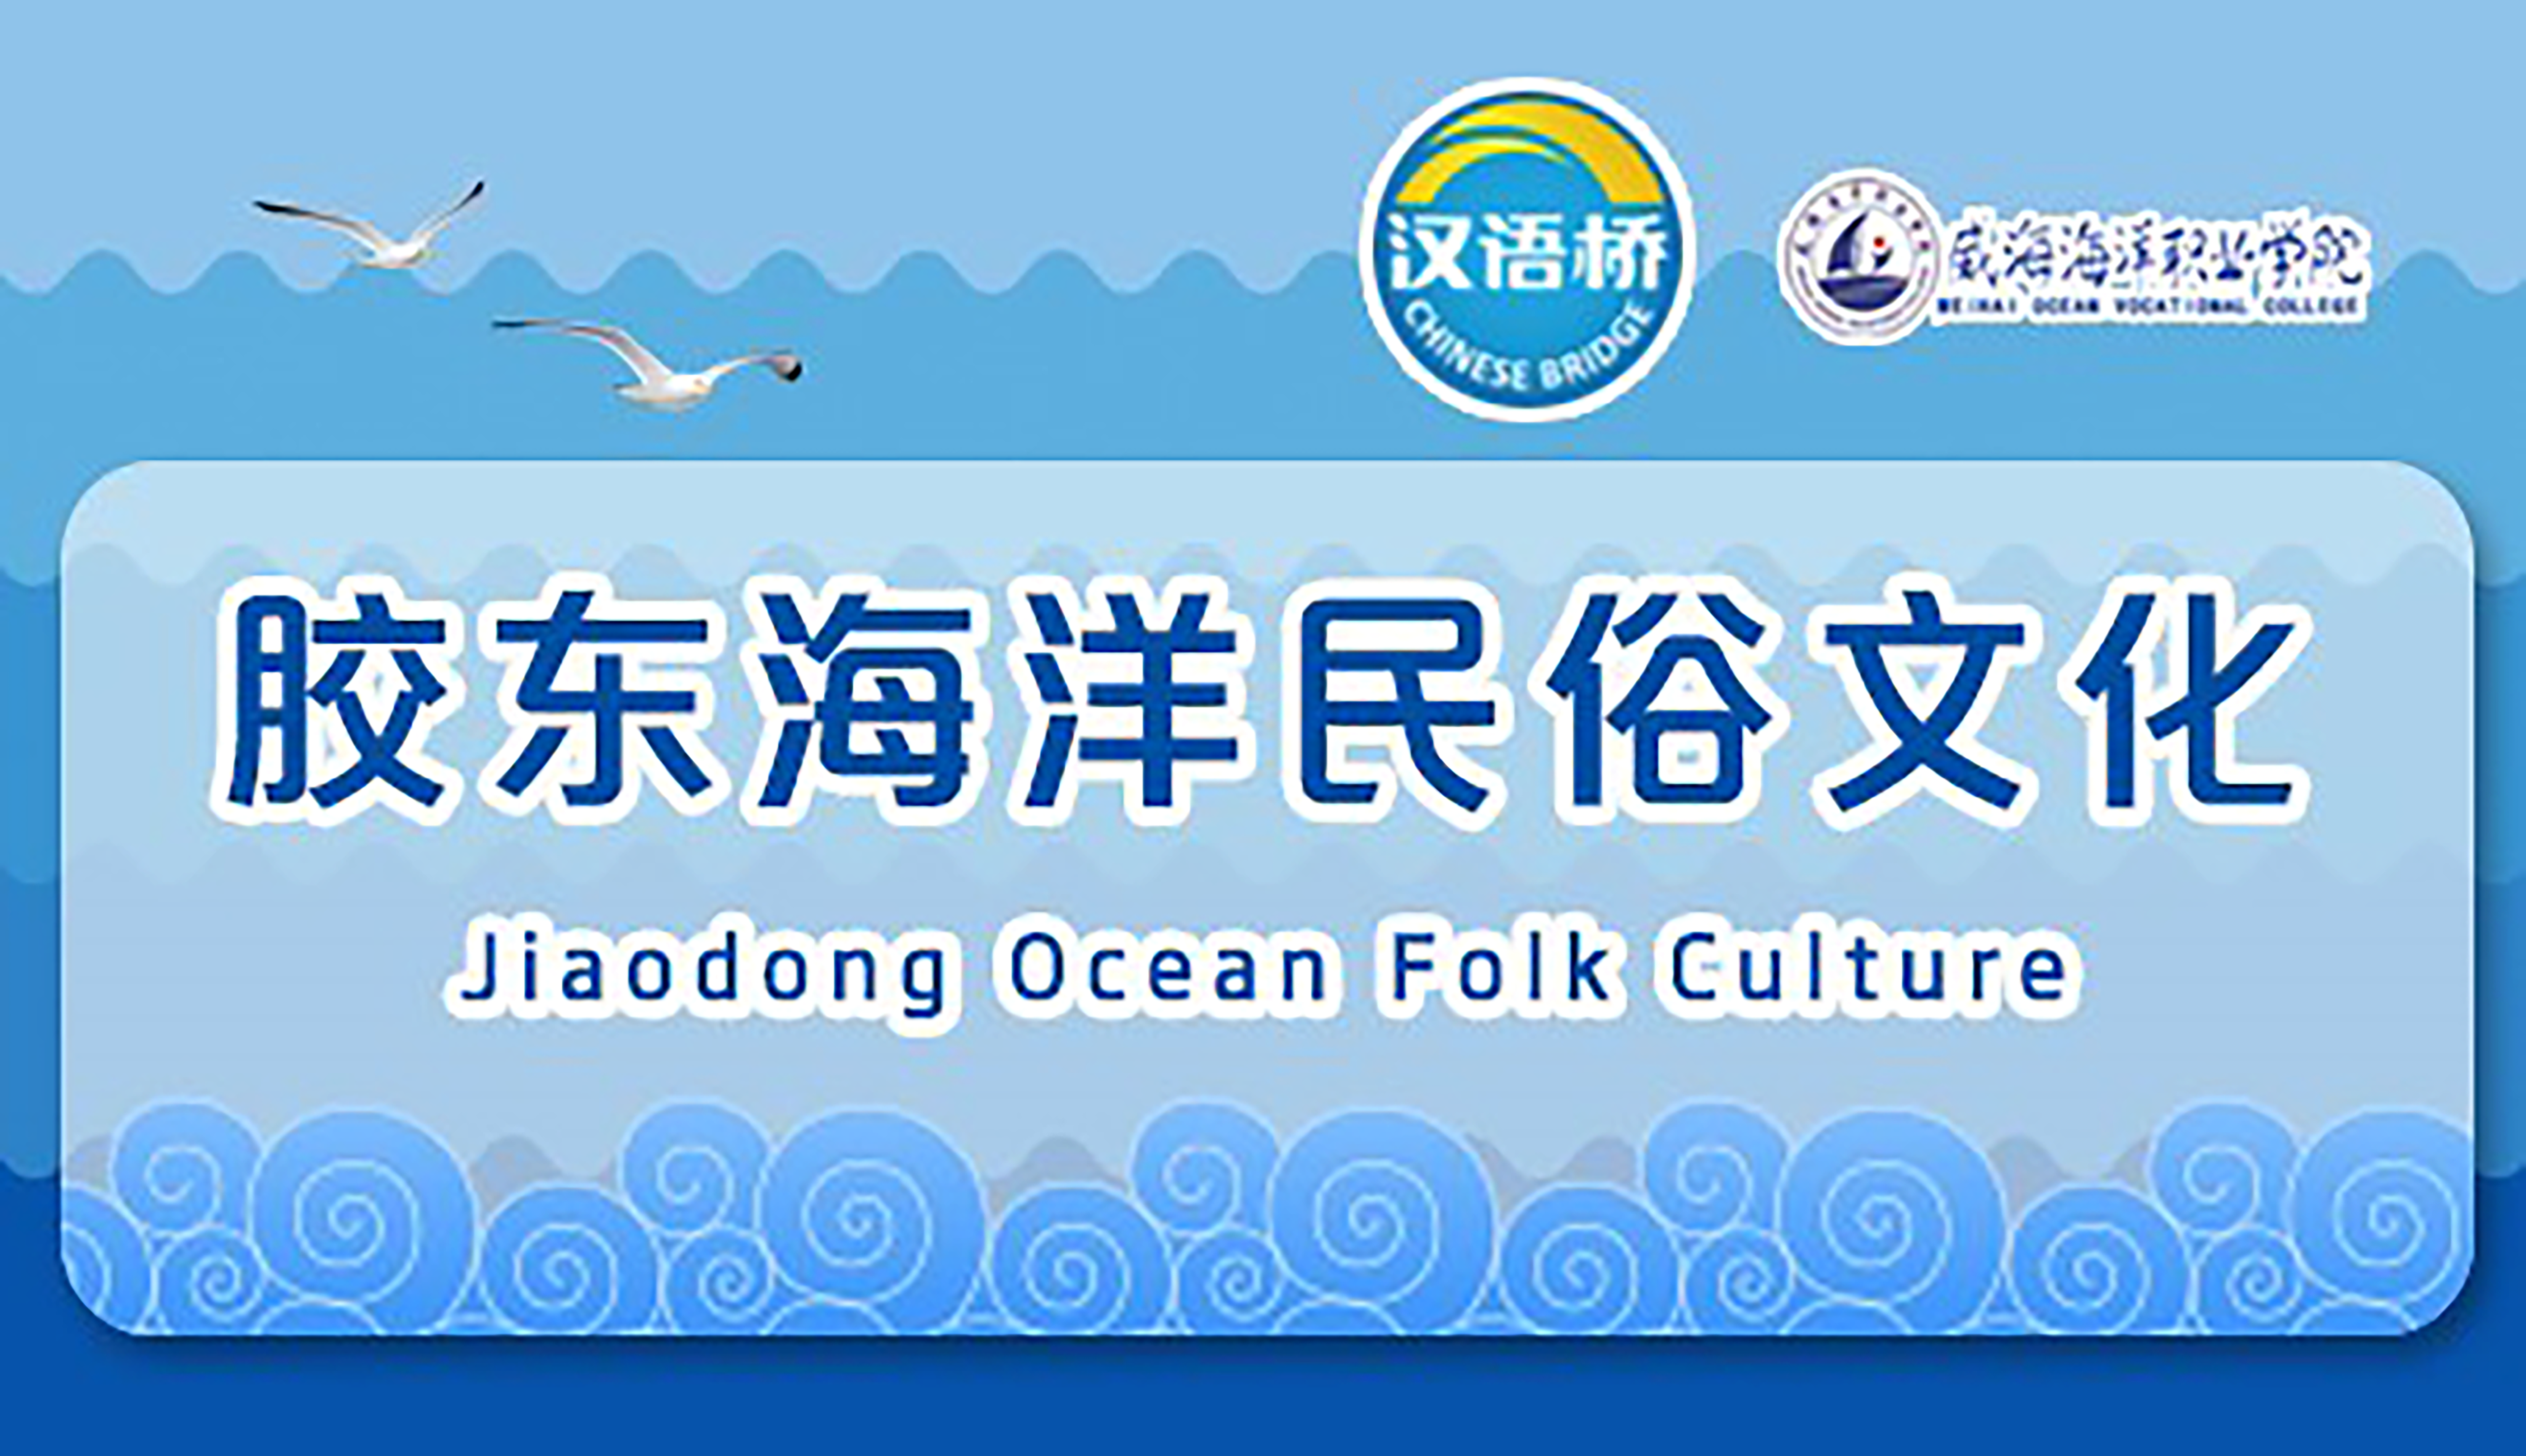 Jiaodong Ocean Folk Culture